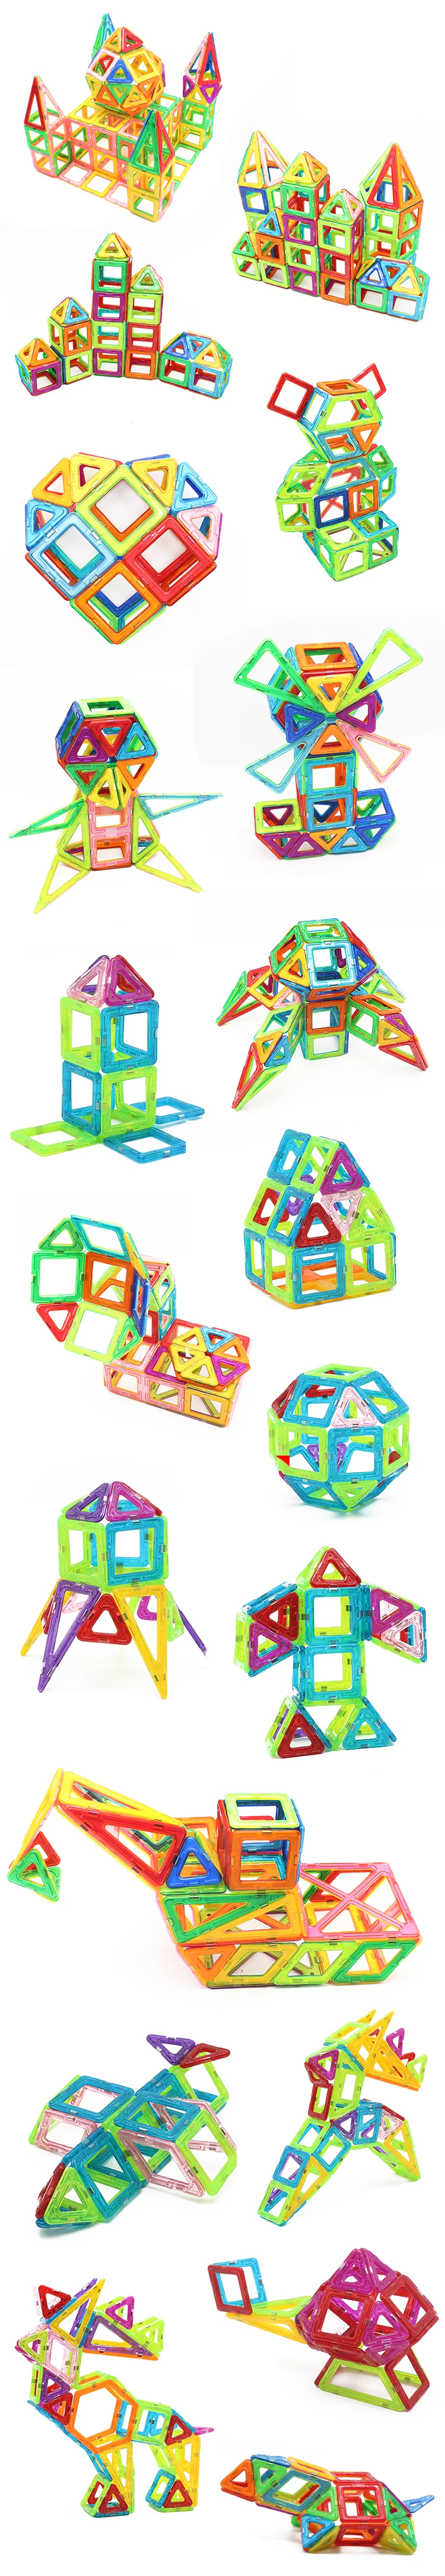 164 шт. большой размер замок магнитный дизайнер развивающие магнитные игрушки 3D DIY строительные блоки кирпичи игрушки для детей